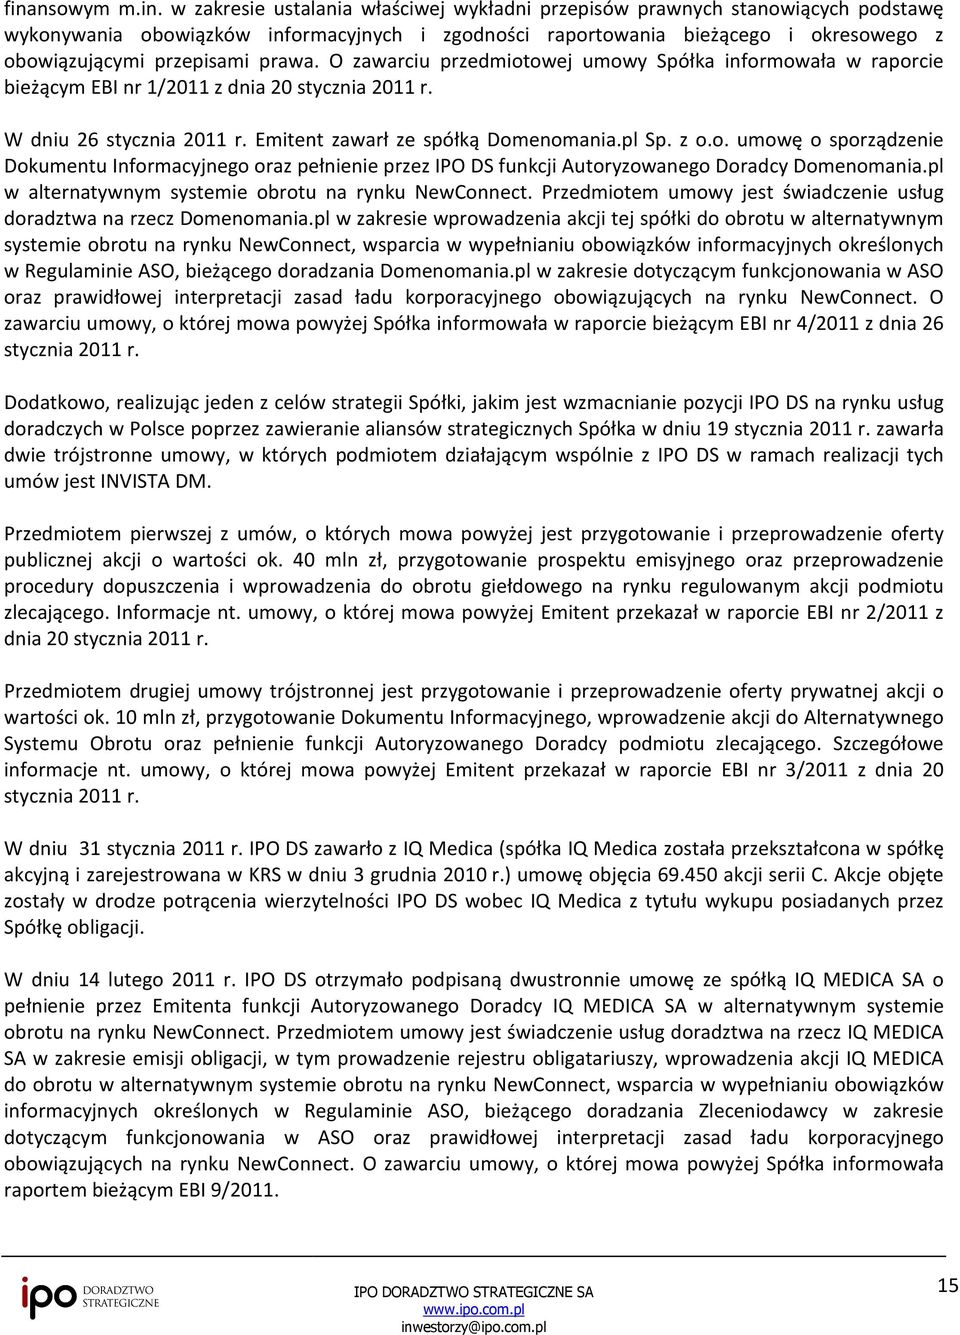 Emitent zawarł ze spółką Domenomania.pl Sp. z o.o. umowę o sporządzenie Dokumentu Informacyjnego oraz pełnienie przez IPO DS funkcji Autoryzowanego Doradcy Domenomania.